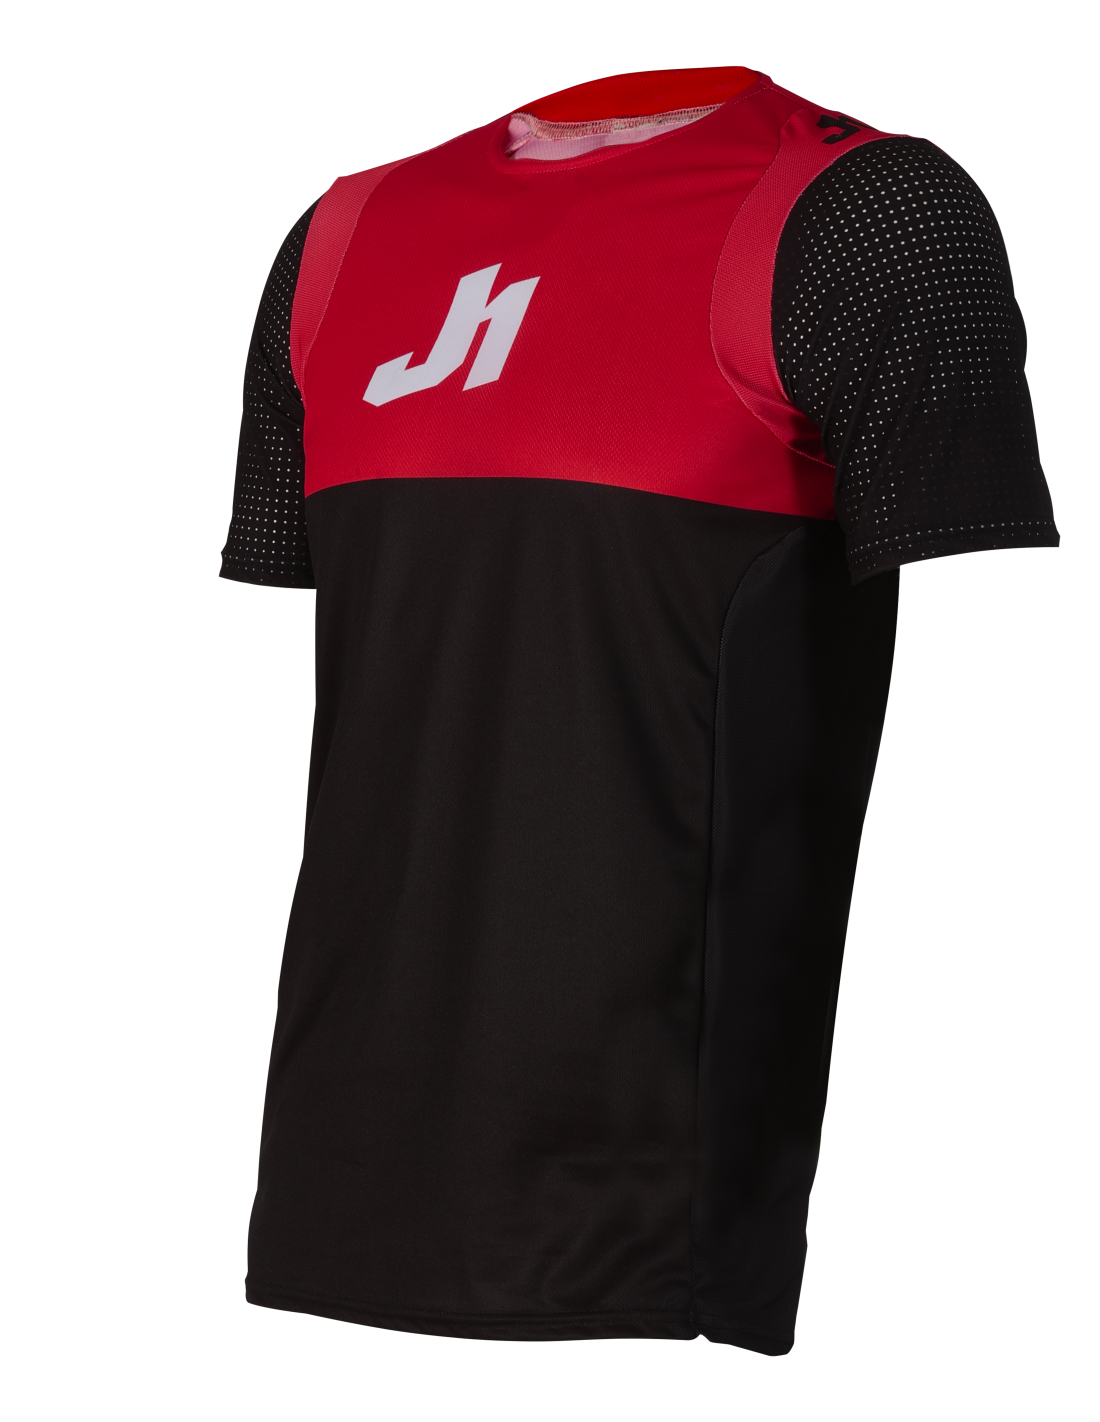 Just1 - Mtb Ss Jersey J-Flex - Dual Black Red